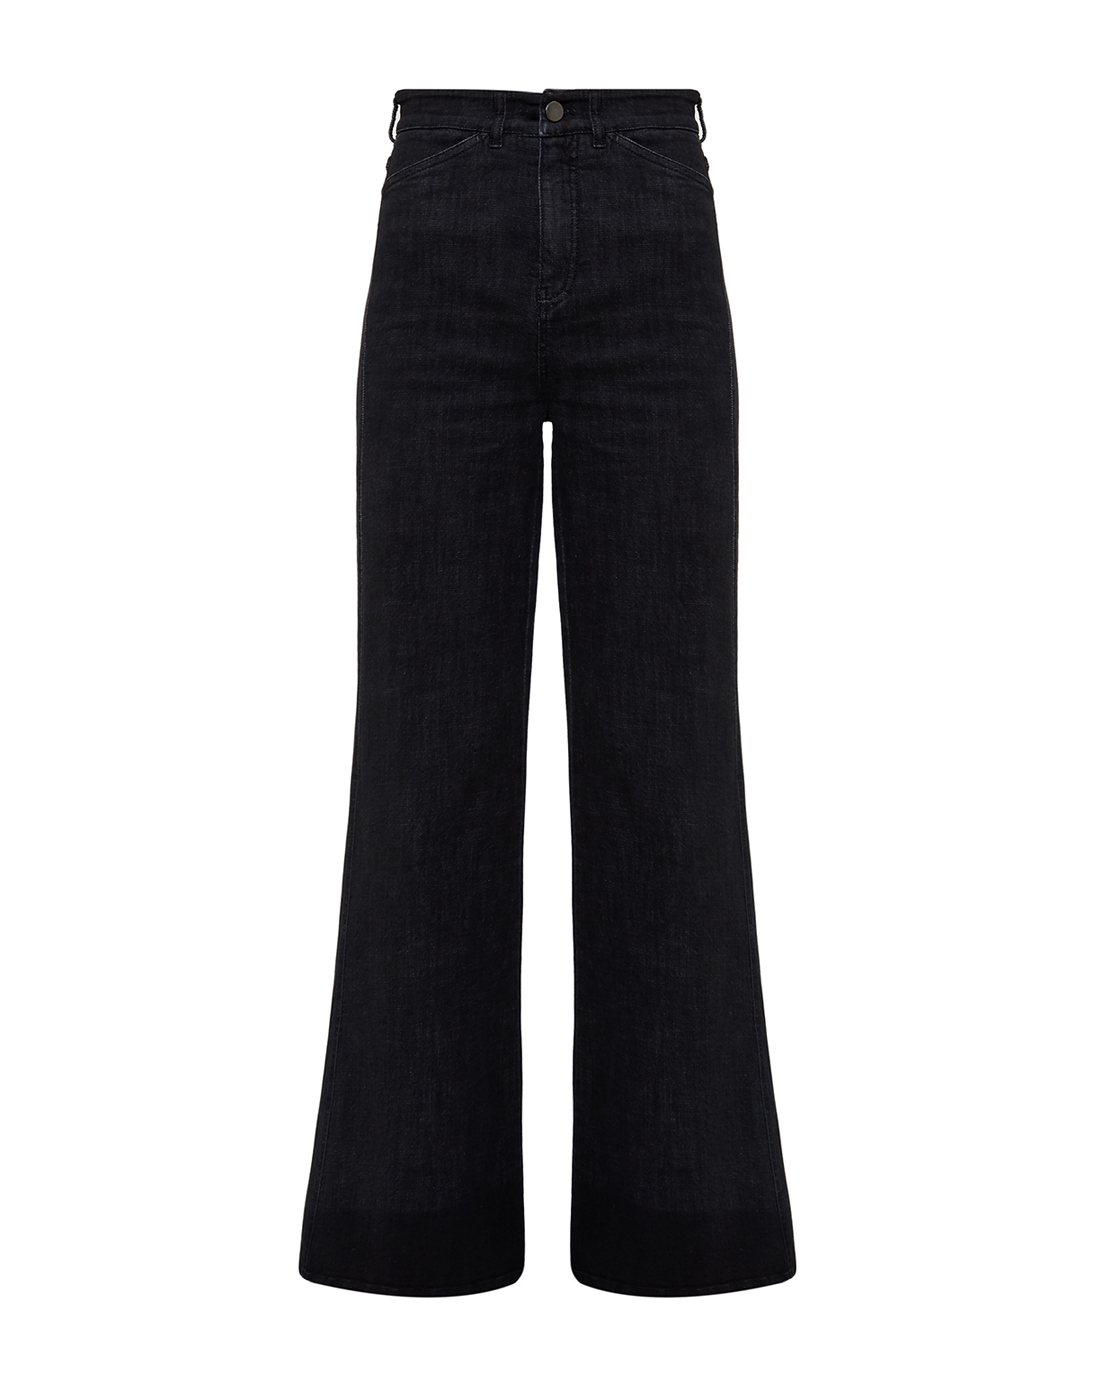 Женские черные джинсы Dorothee Schumacher S846203/999-1